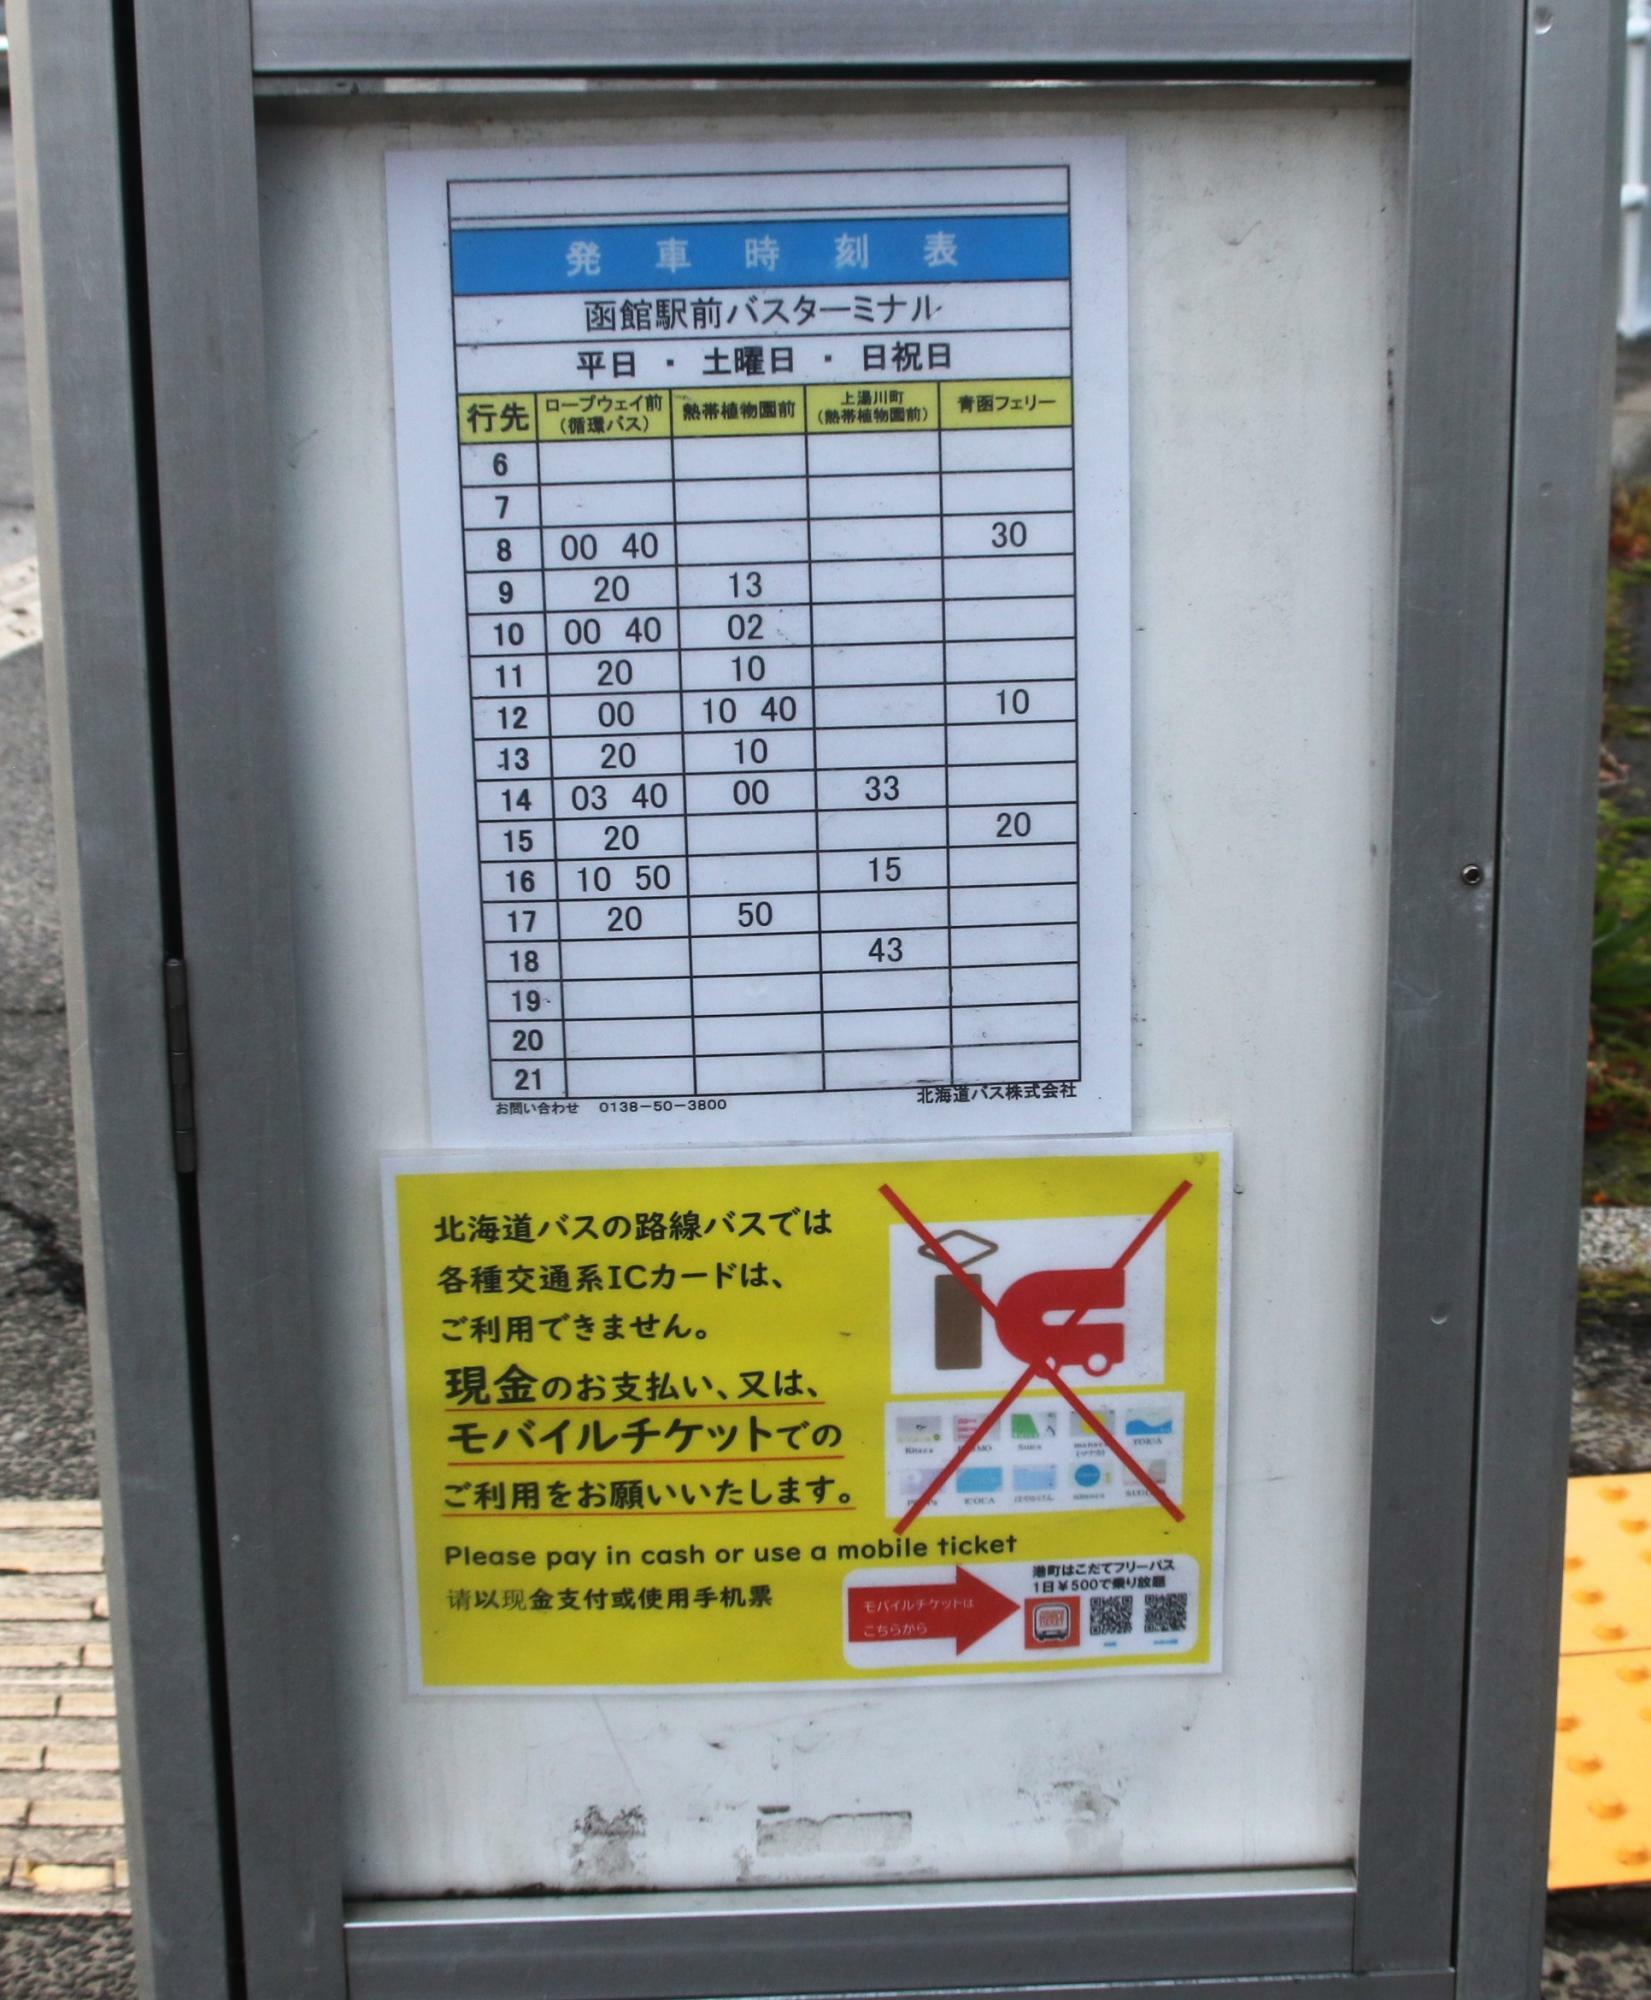 14番のりばにある北海道バス発車時刻表